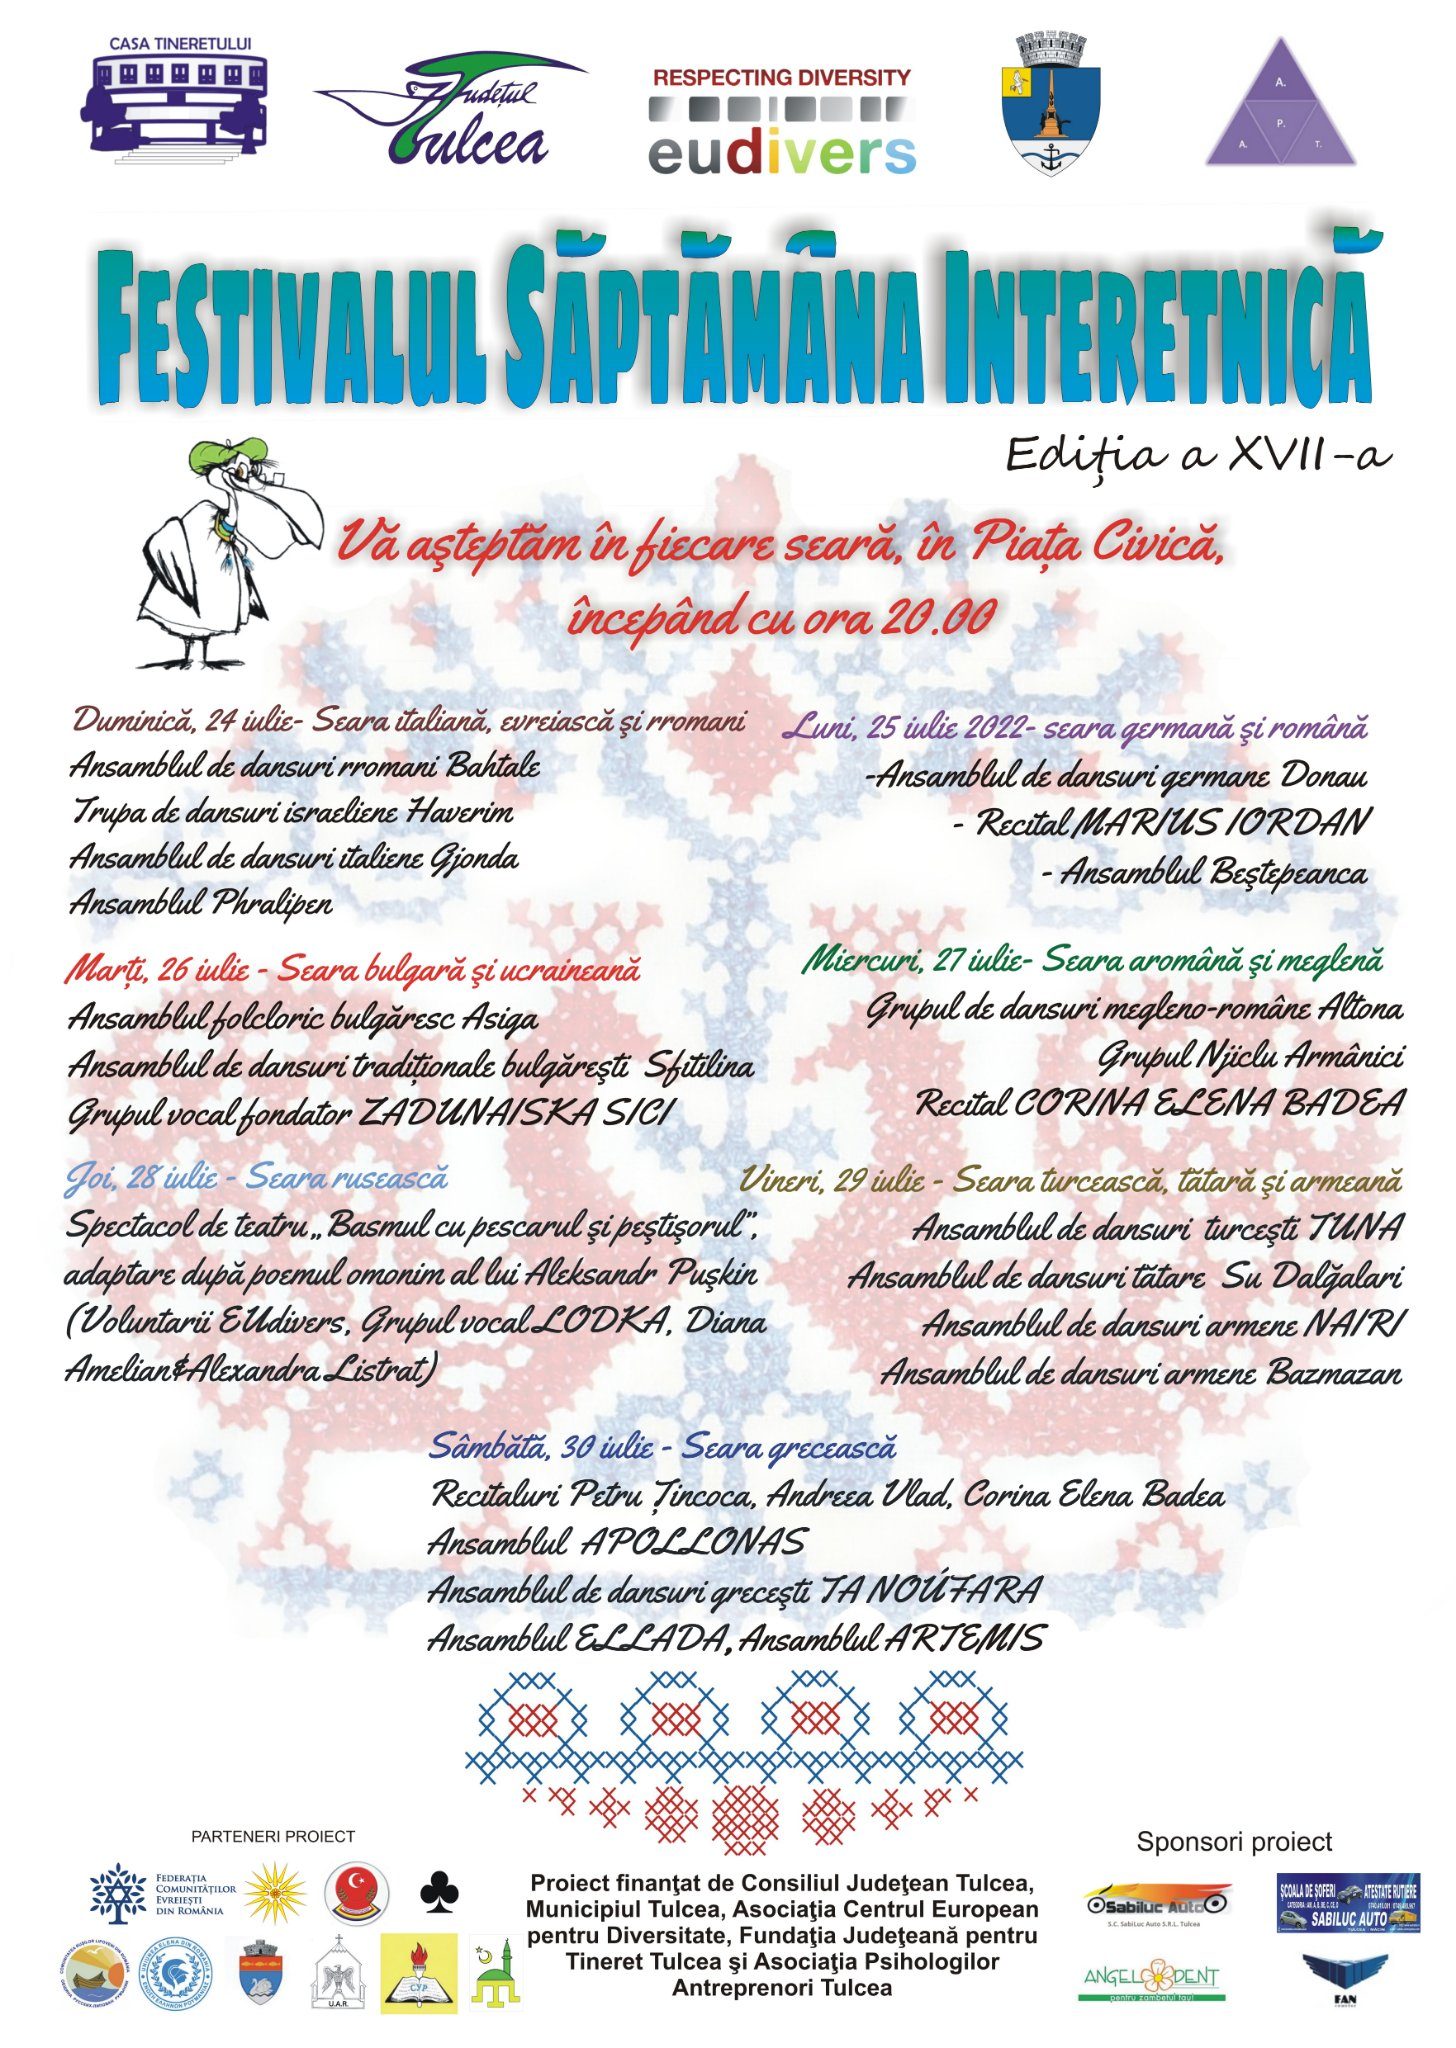 Festivalul Saptamana Interetnica – Editia a XVII-a in Tulcea